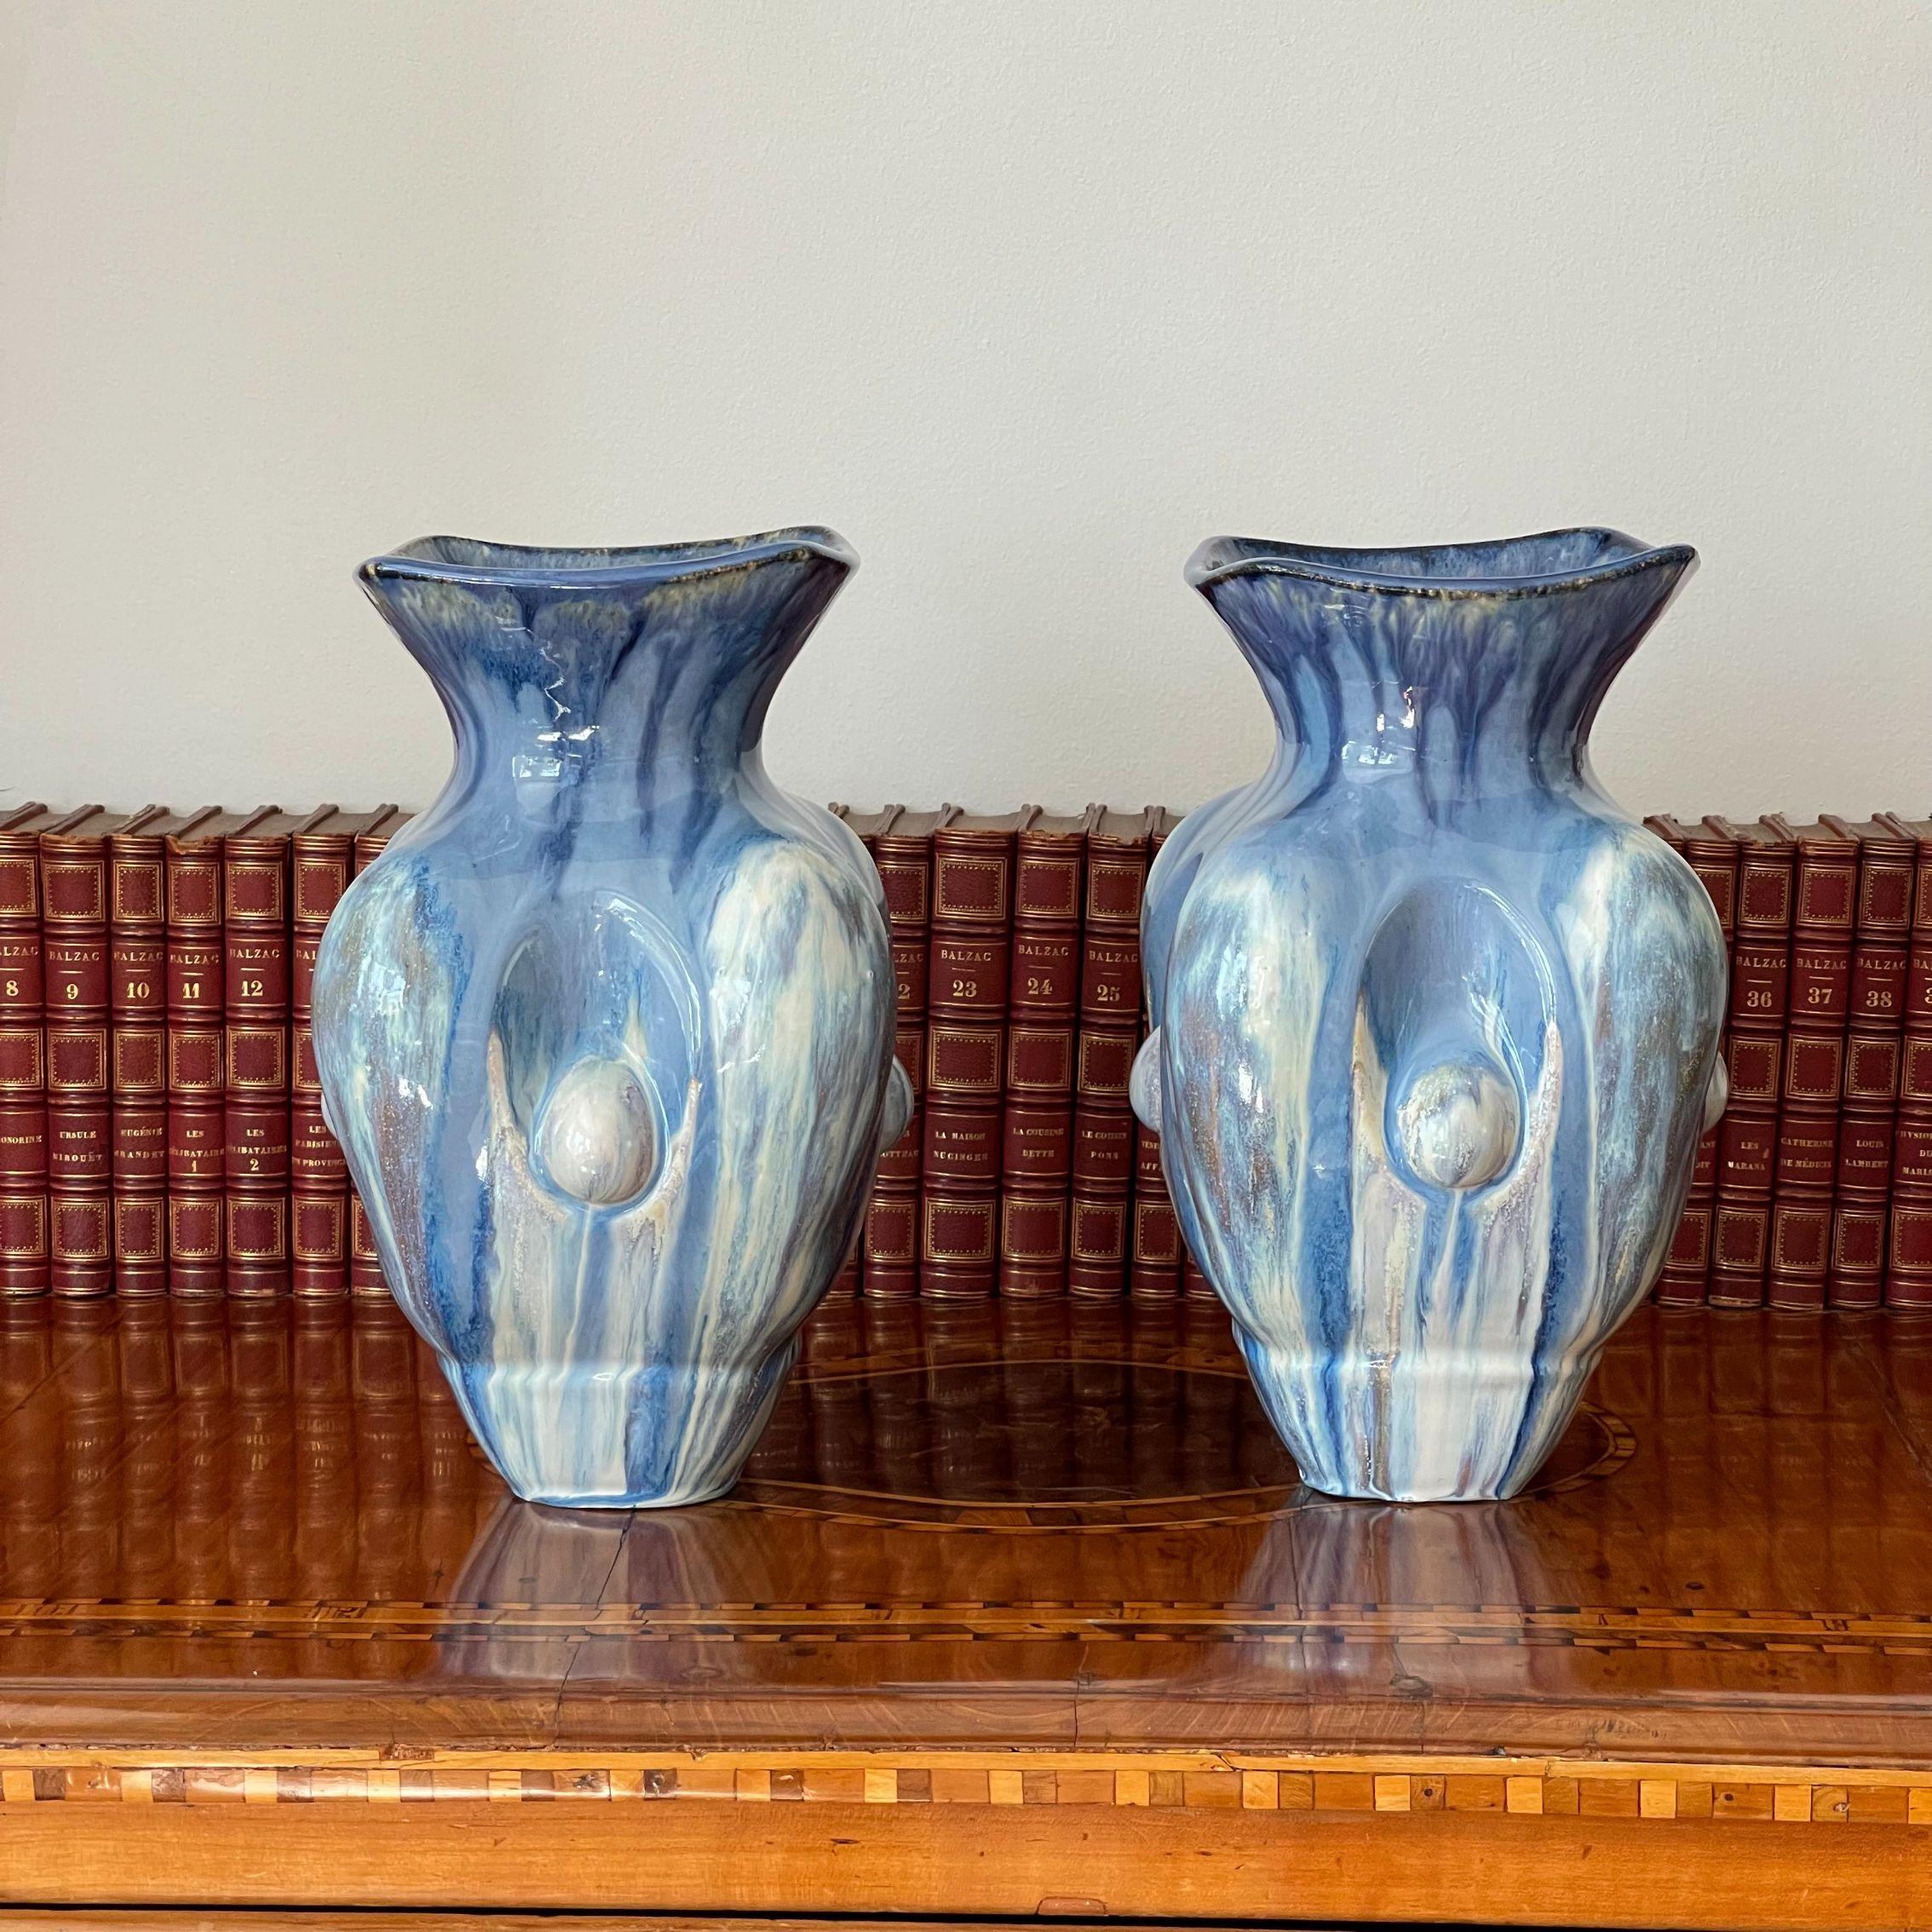 Pair of Sky Blue Ceramic Vases Contemporary 21st Century Italian Unique Piece For Sale 3